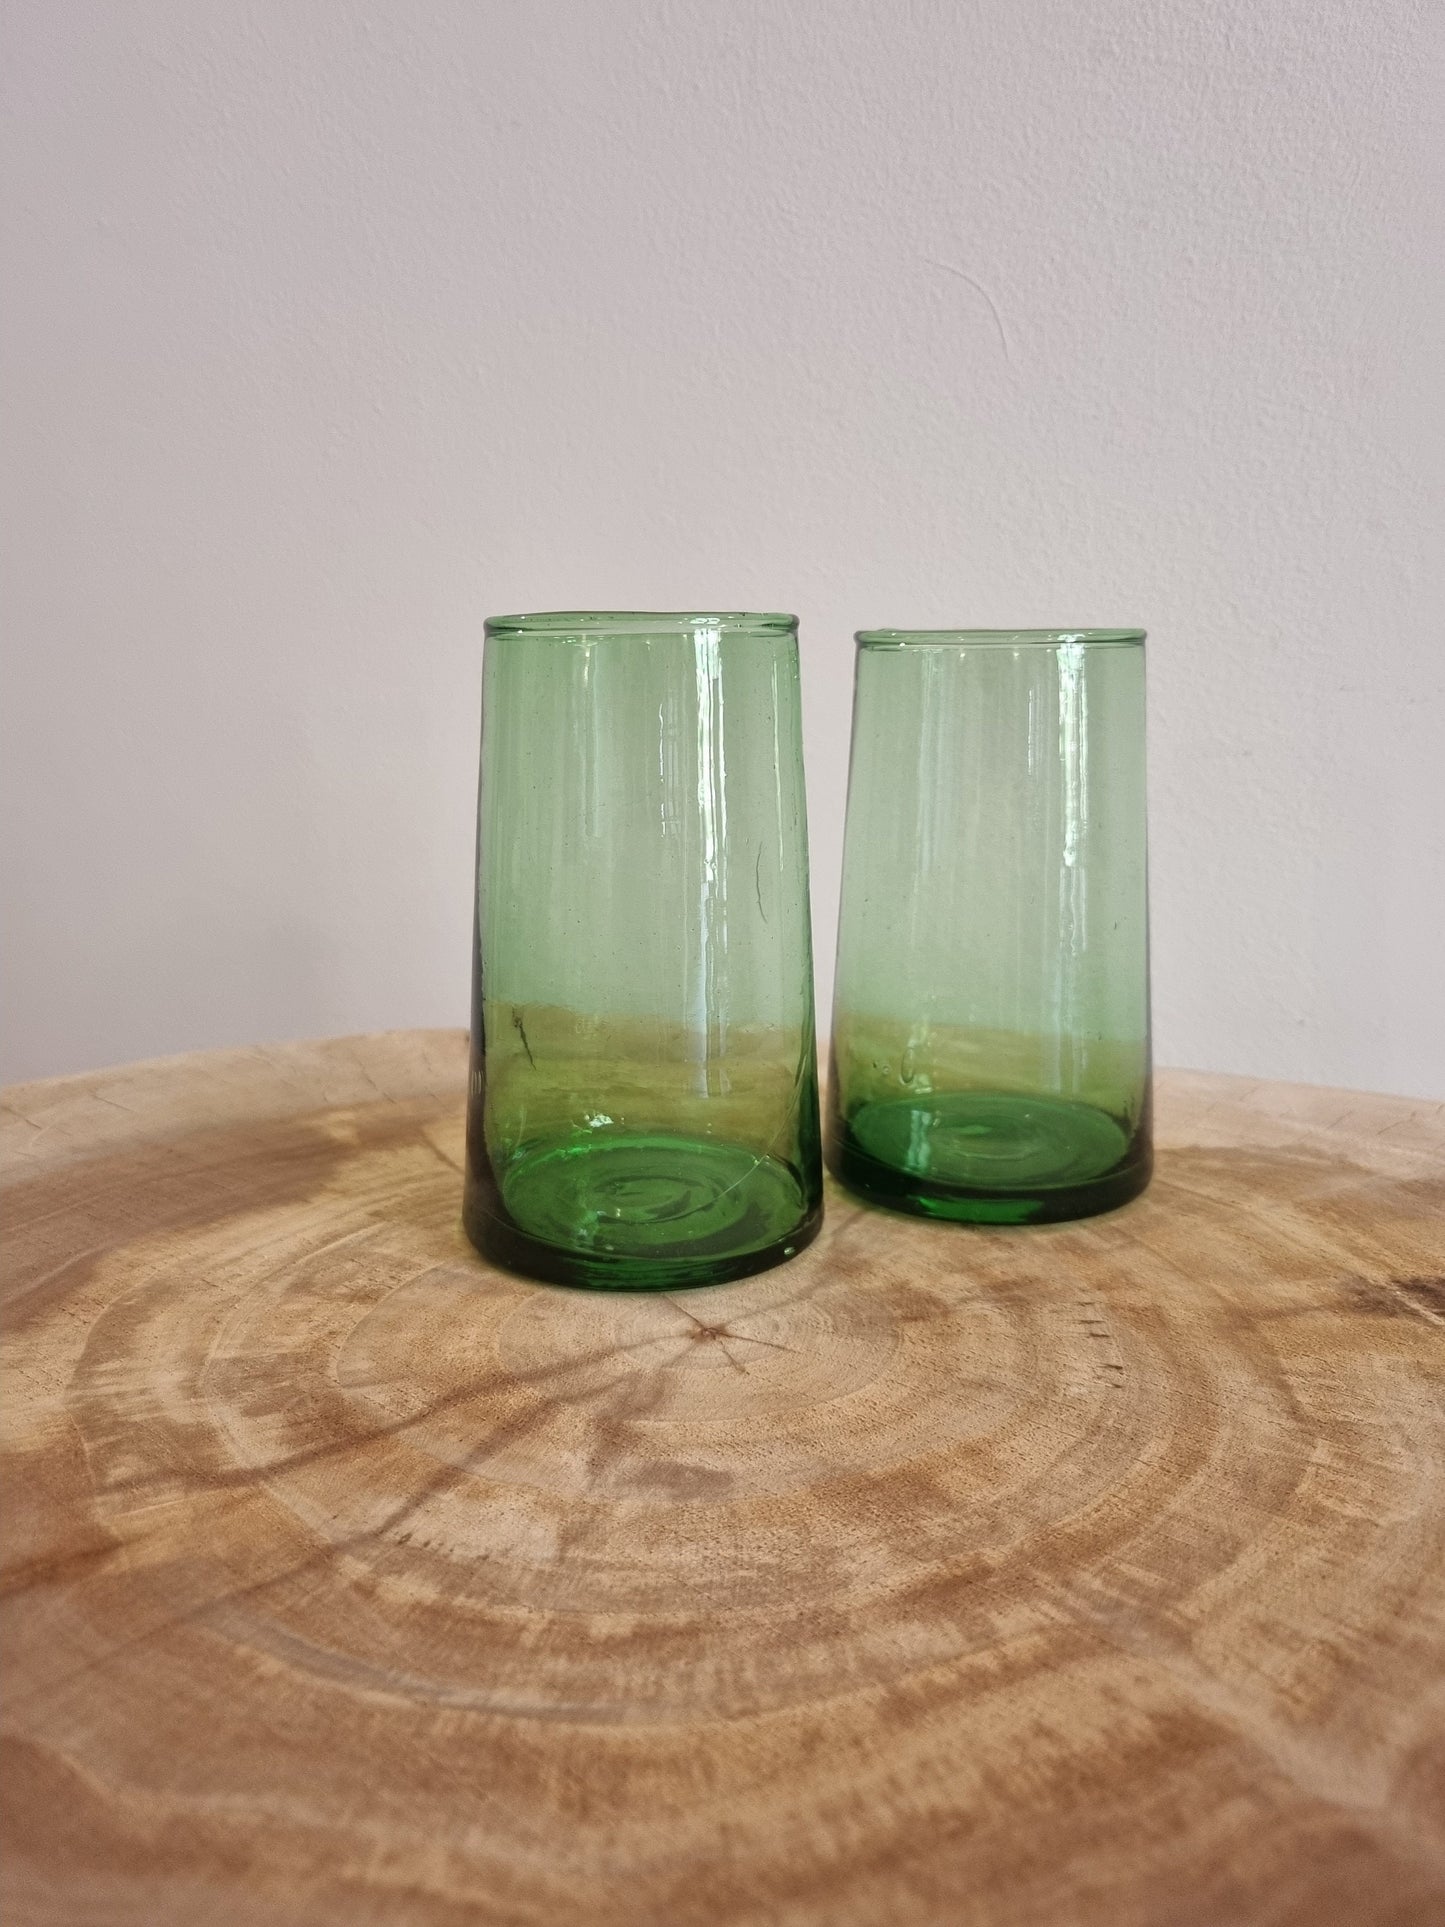 Six verres style marocain verts en verre.